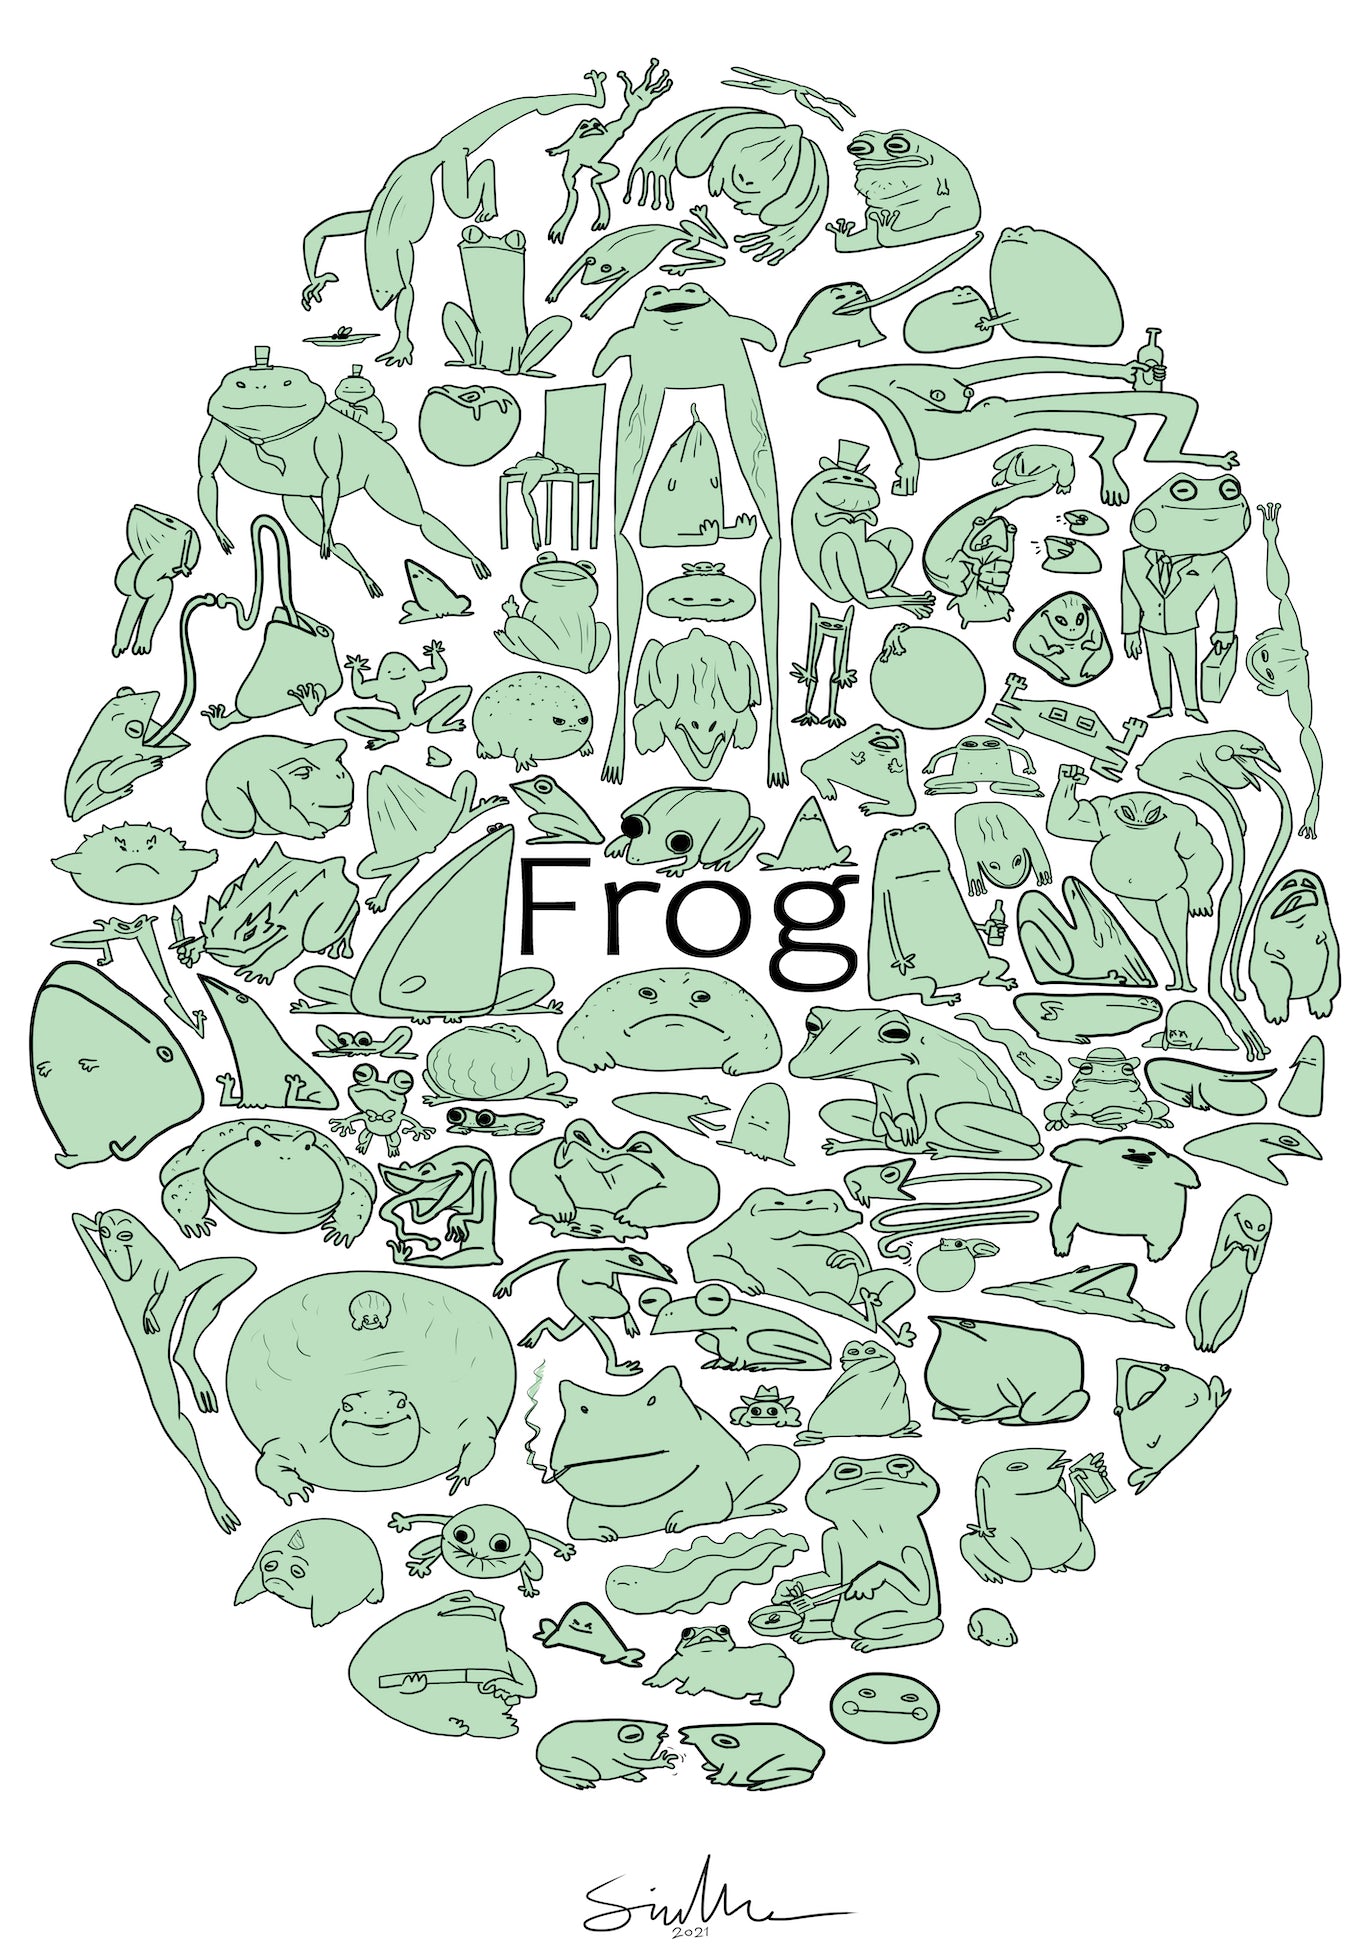 Limited Edition - Shoocharu Frog Poster